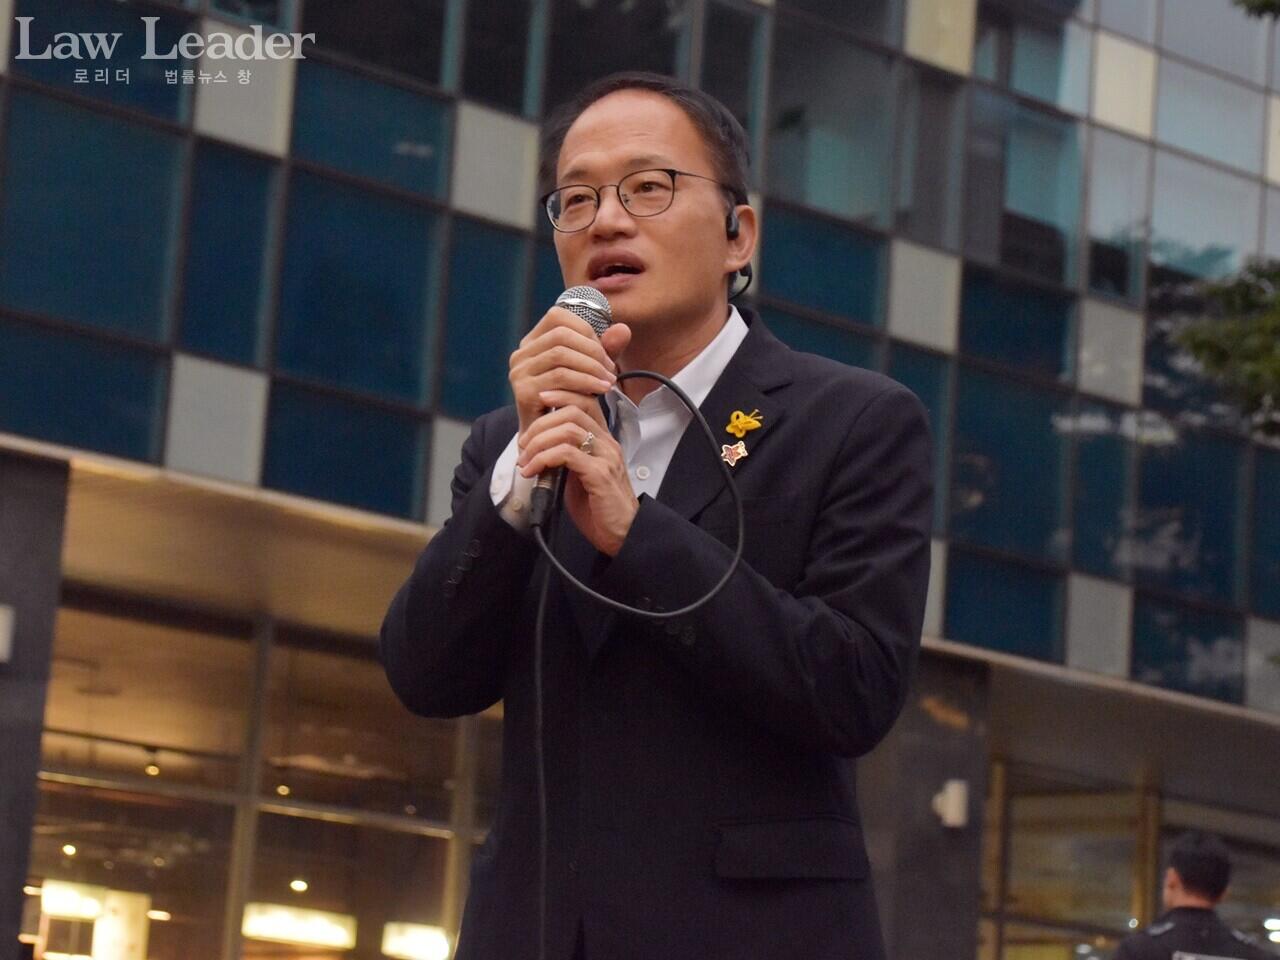 더불어민주당 을지로위원회 위원장 박주민 워내수석부대표